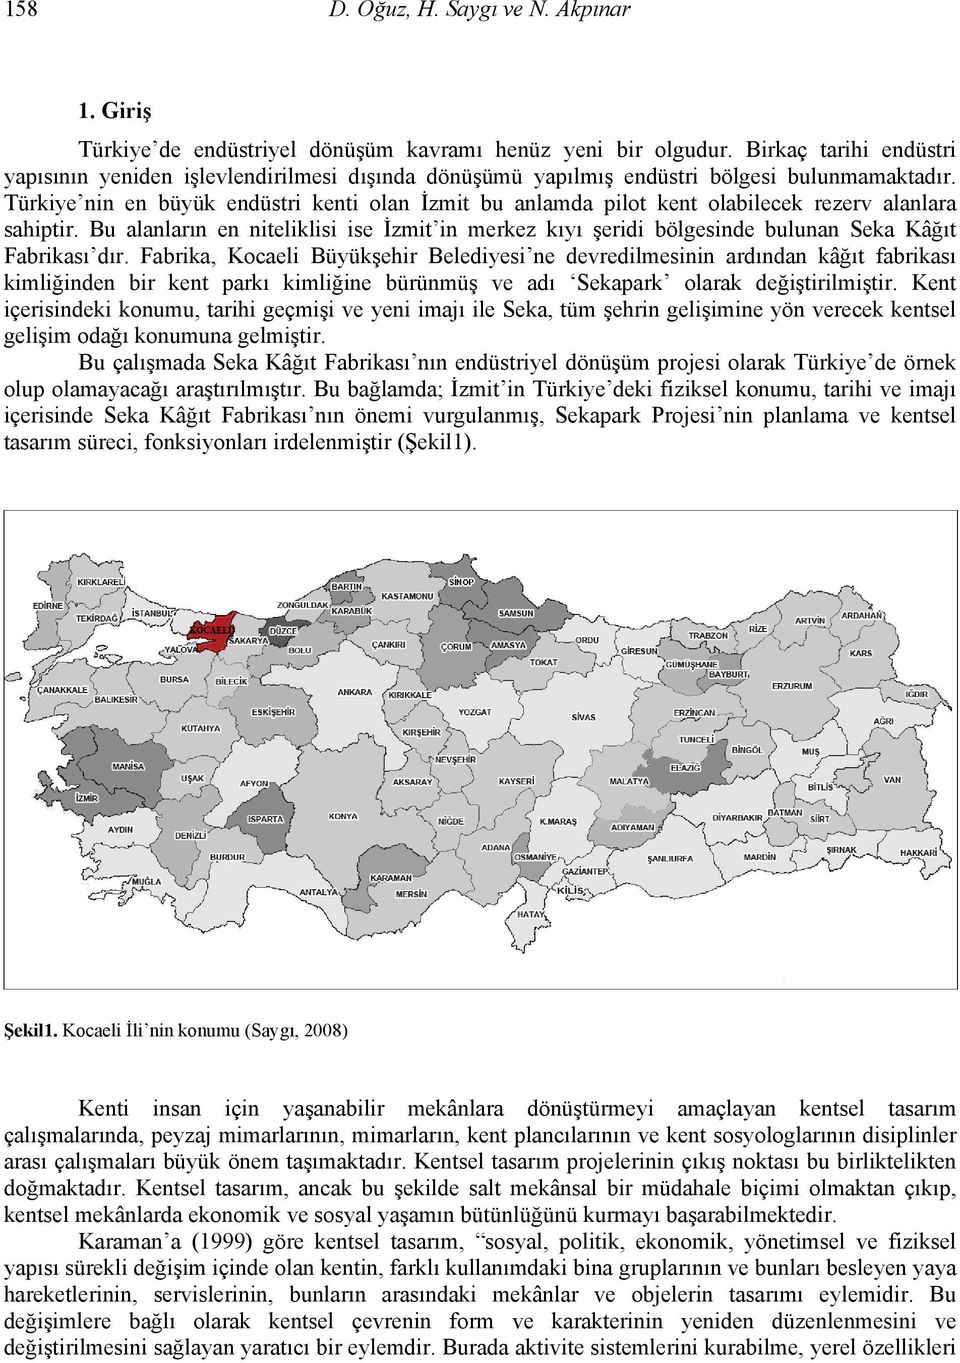 Türkiye nin en büyük endüstri kenti olan İzmit bu anlamda pilot kent olabilecek rezerv alanlara sahiptir.